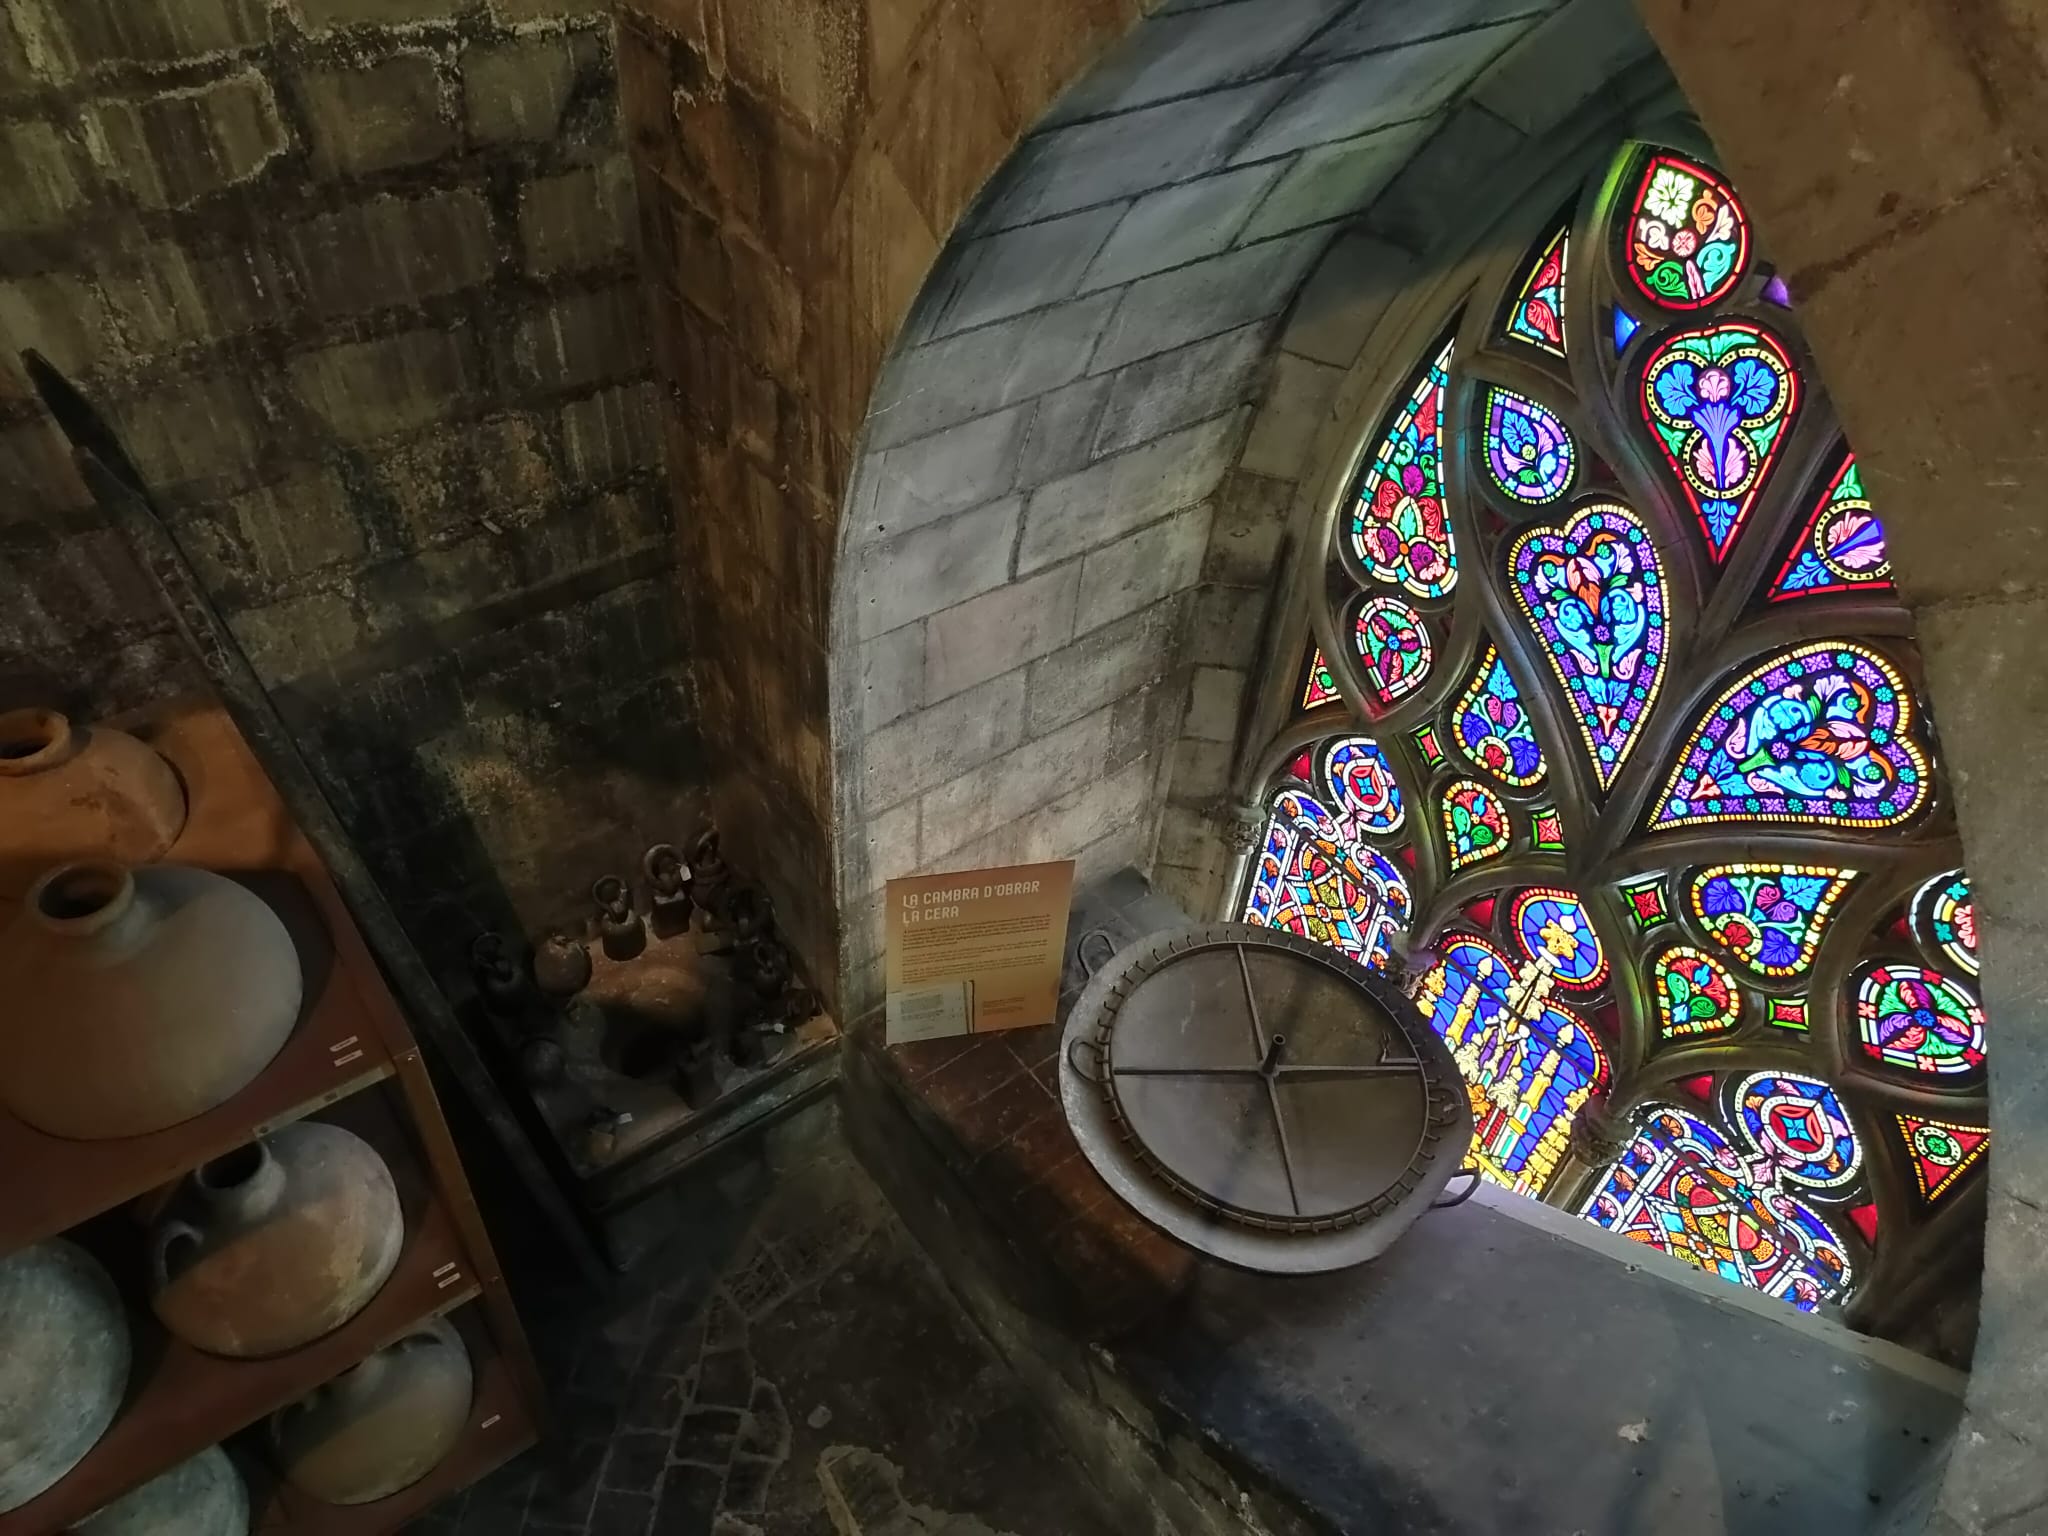 Visita l’exposició sobre la producció de cera a l’edat mitjana a la Catedral Barcelona